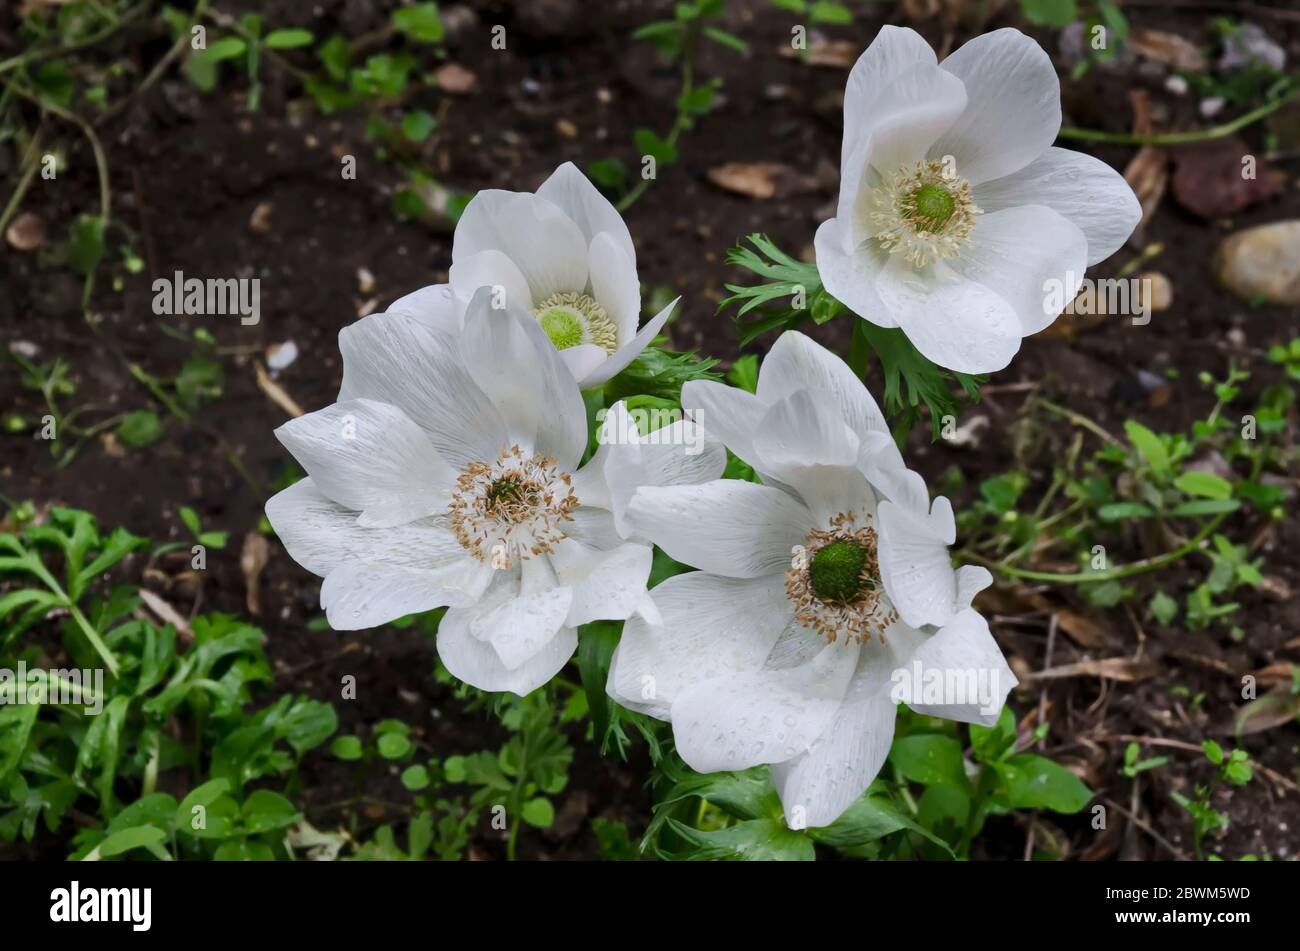 Wood Anemone, Anemone Nemorosa, windflower, blooming  white garden flower with yellow stamens, Sofia, Bulgaria Stock Photo